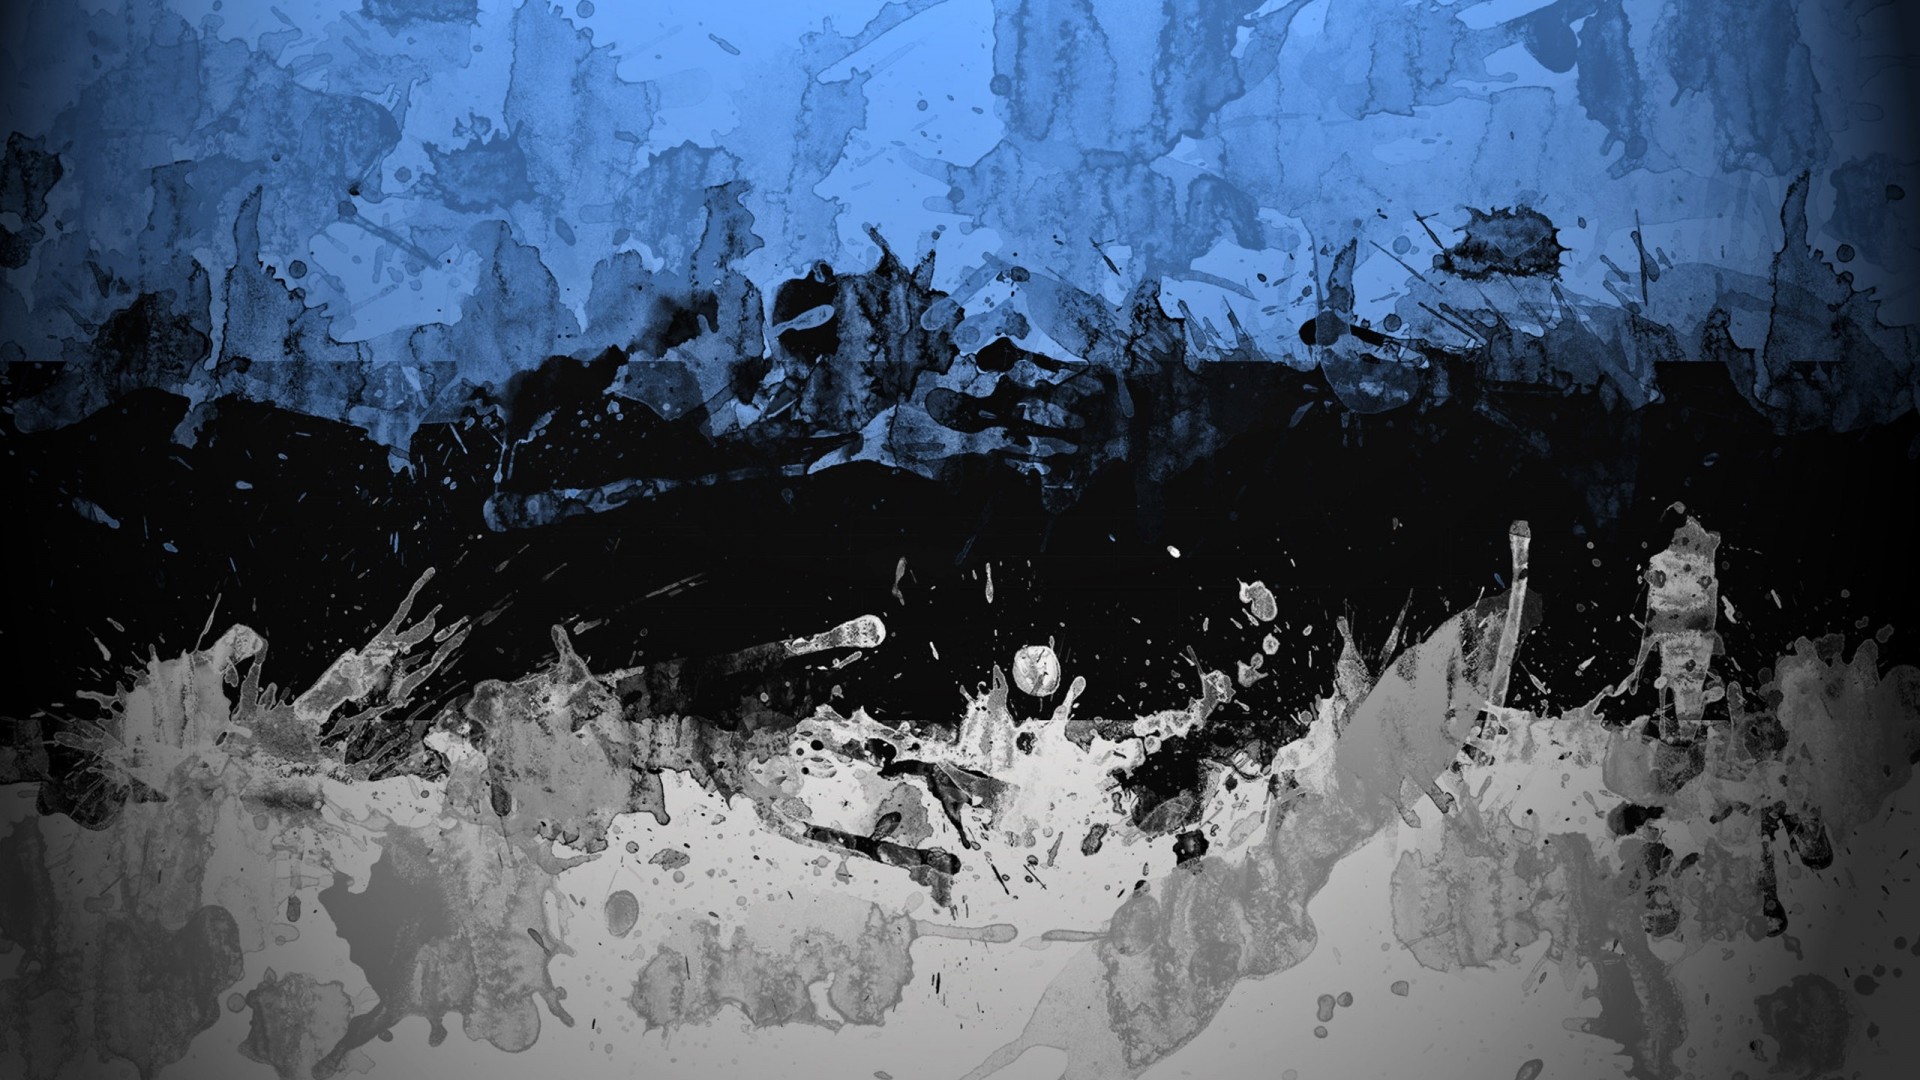 Abstract Gaming Wallpaper 1080p Image